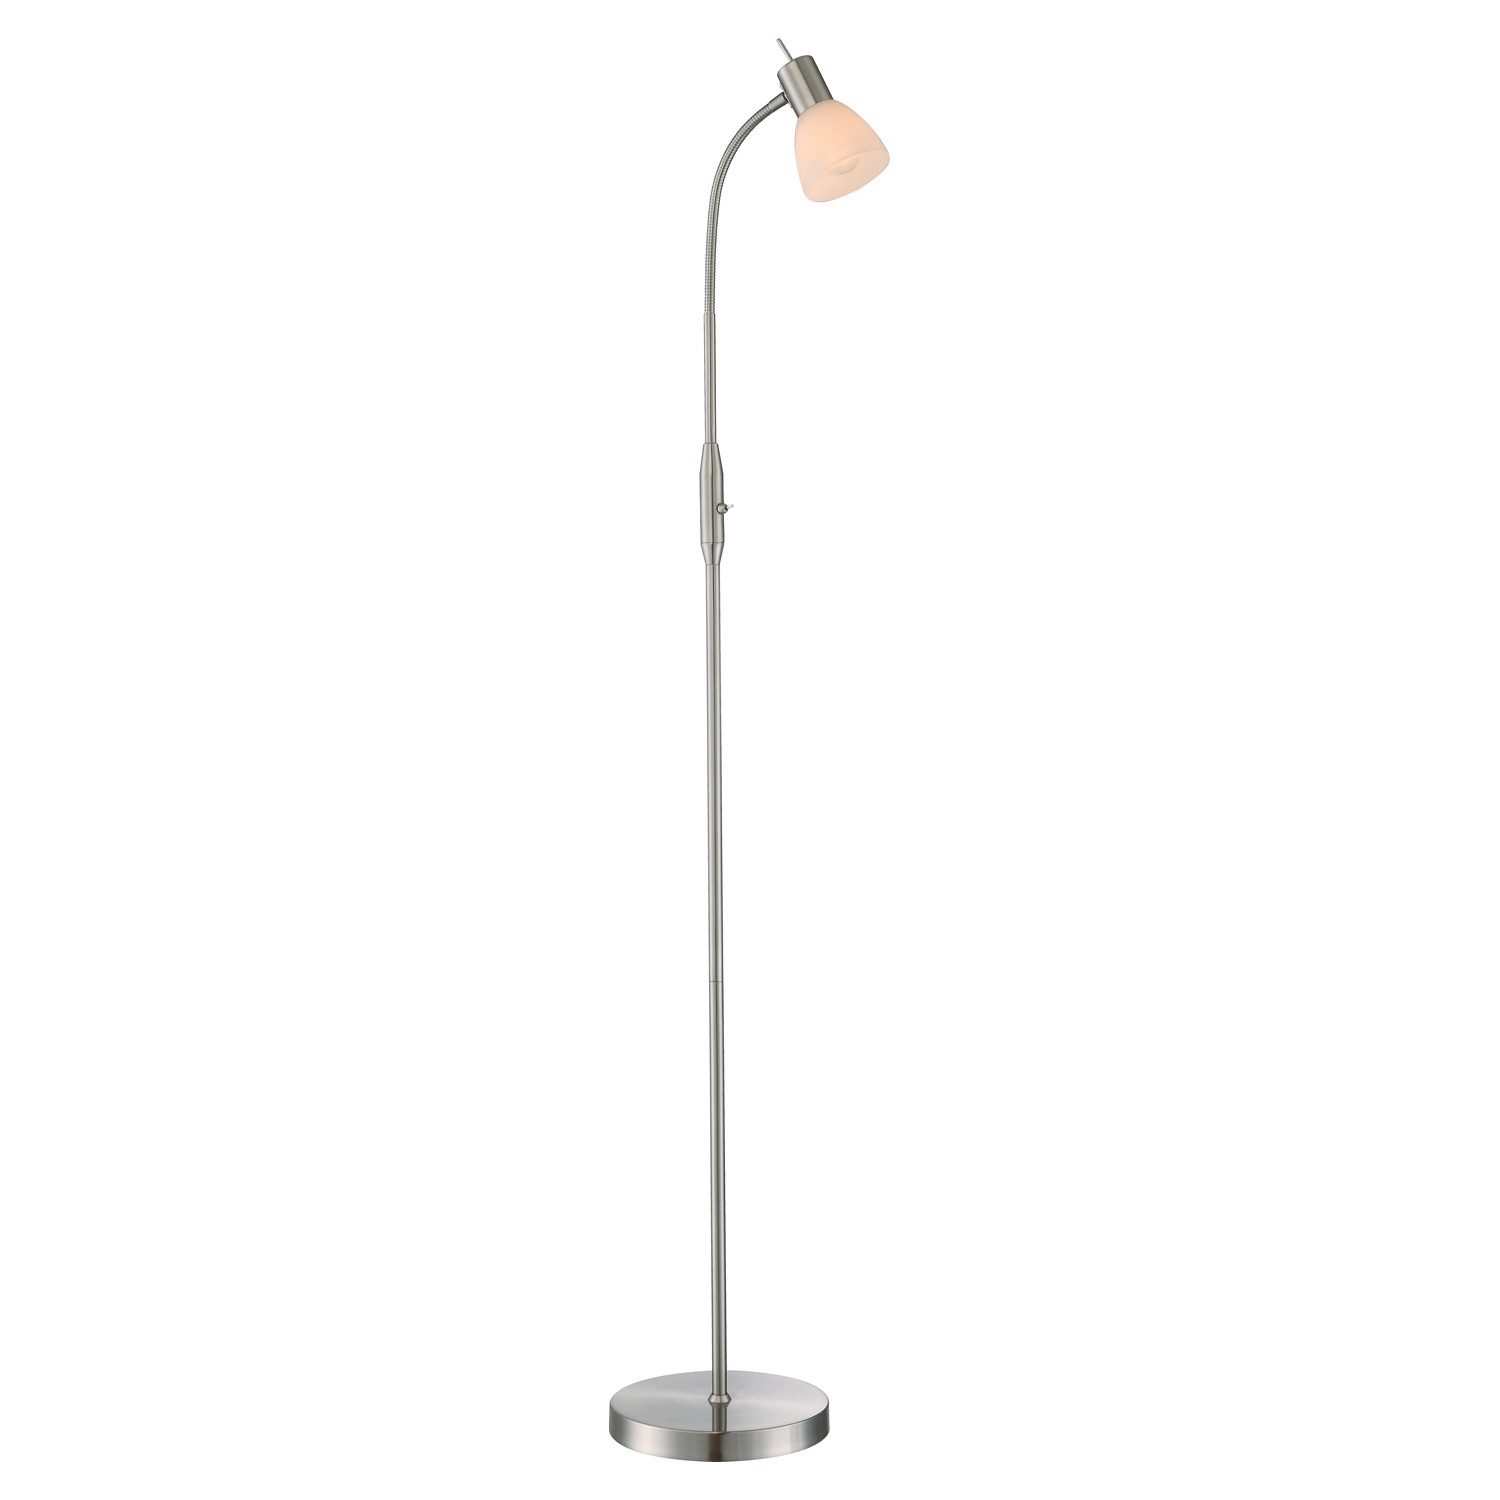 Globo Stehlampe Stehleuchte PANNA, H 146 cm, Nickelfarben, Weiß, ohne Leuchtmittel, Metallgestell, Lampenschirm aus Glas